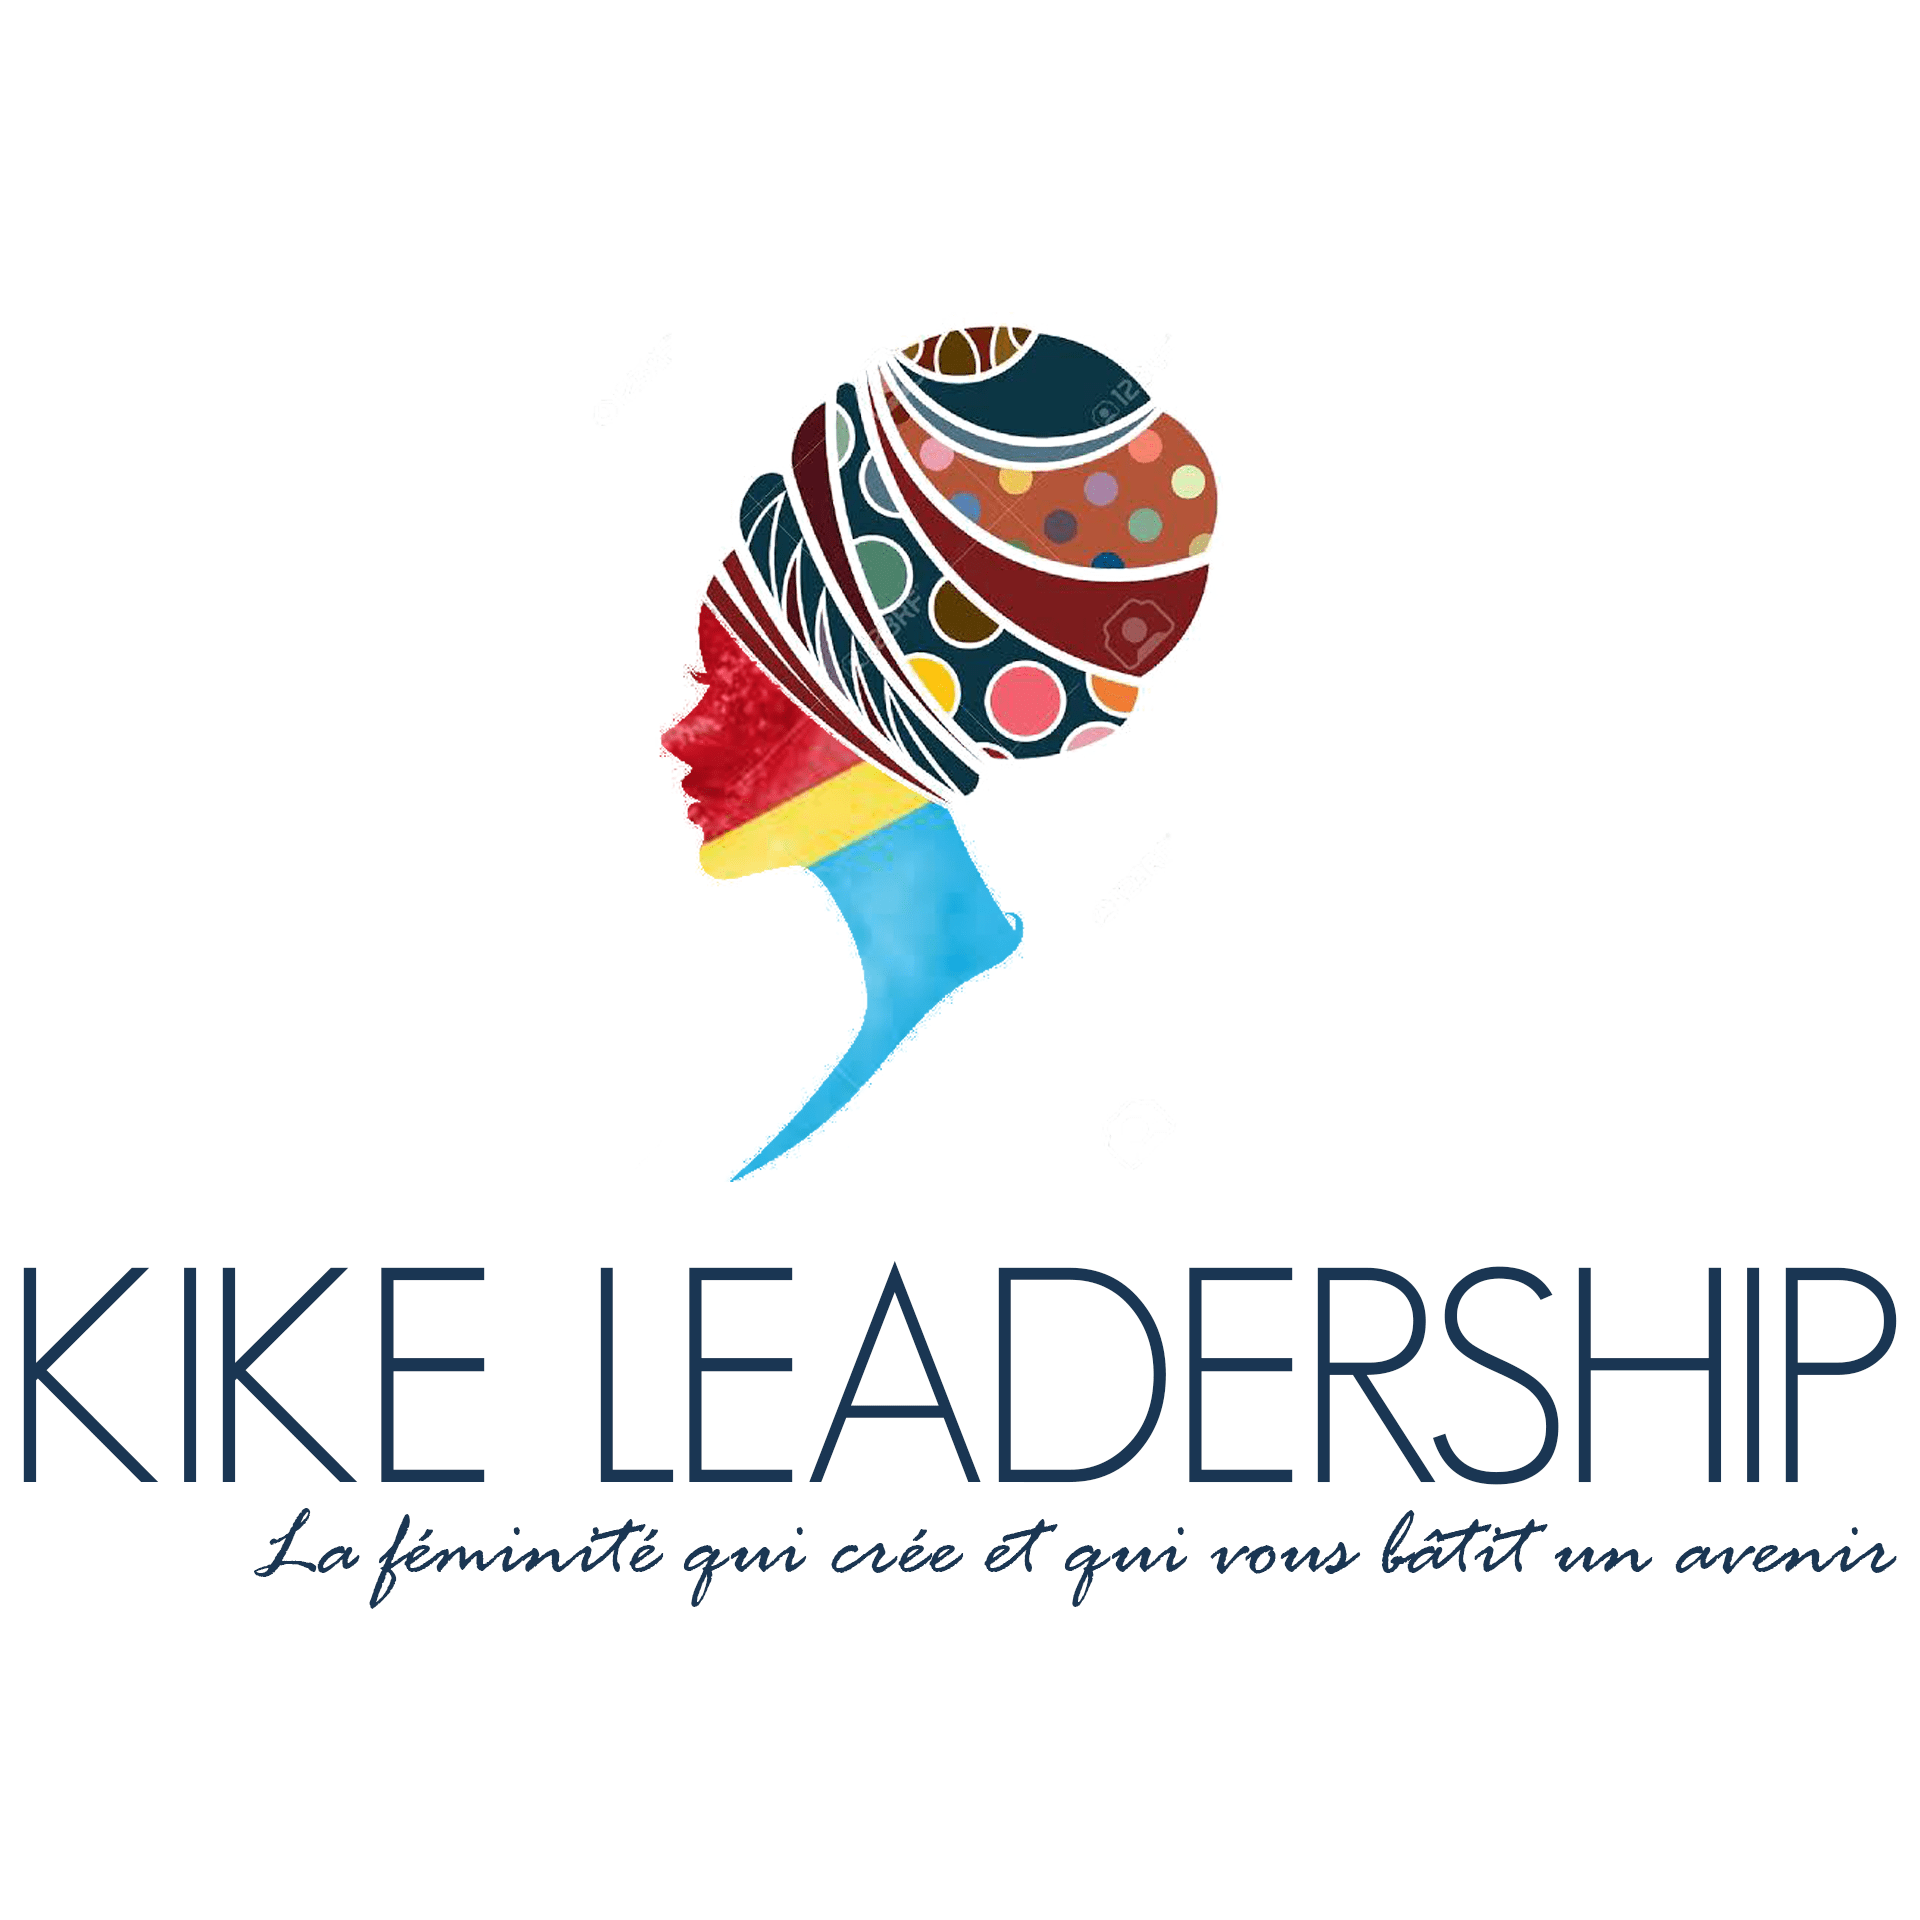 Kike leadership